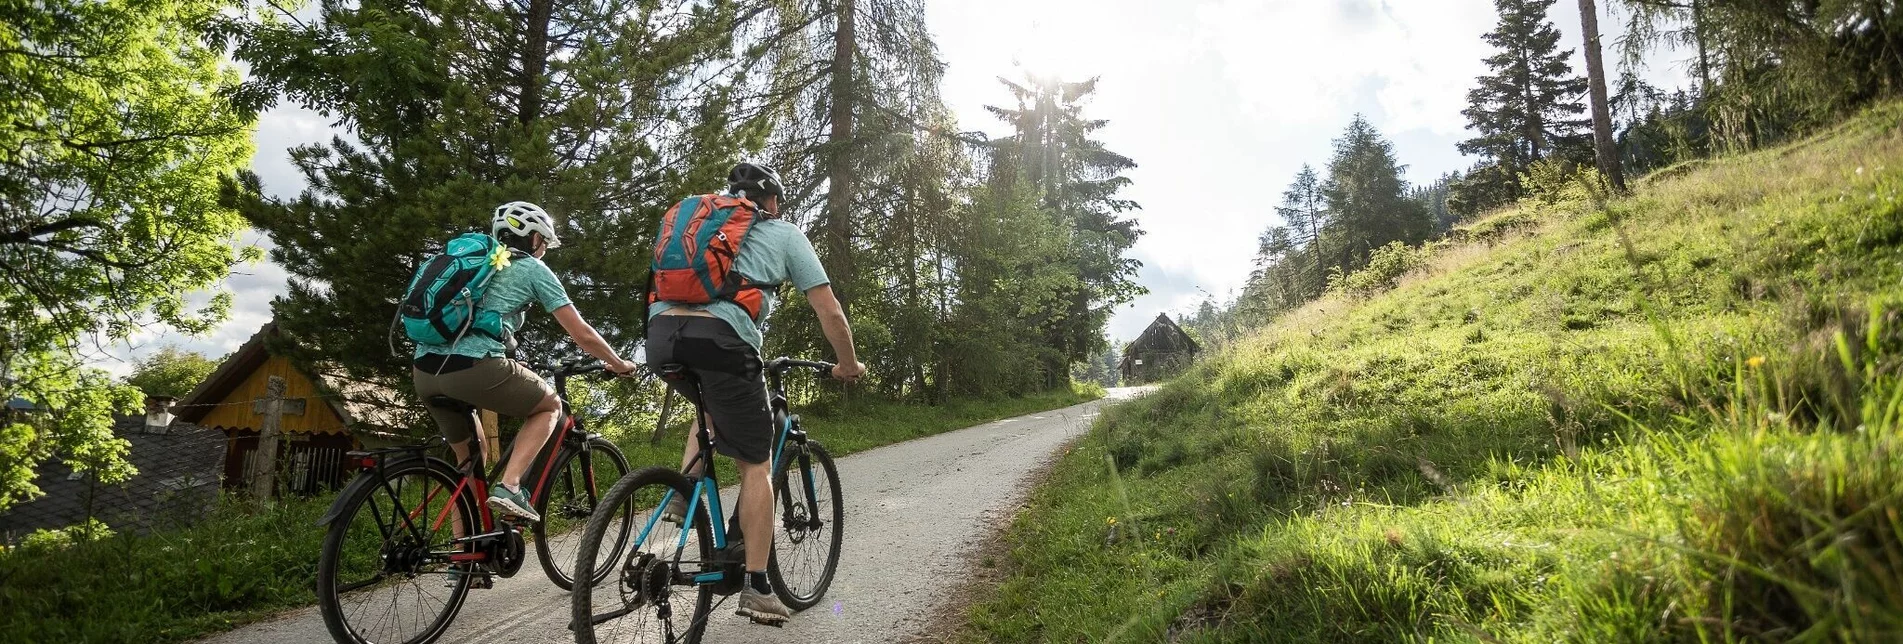 Mountain Biking From Silvano to Berg7 with a detour to the Rieglerhütte - Touren-Impression #1 | © Tourismusverband Murau